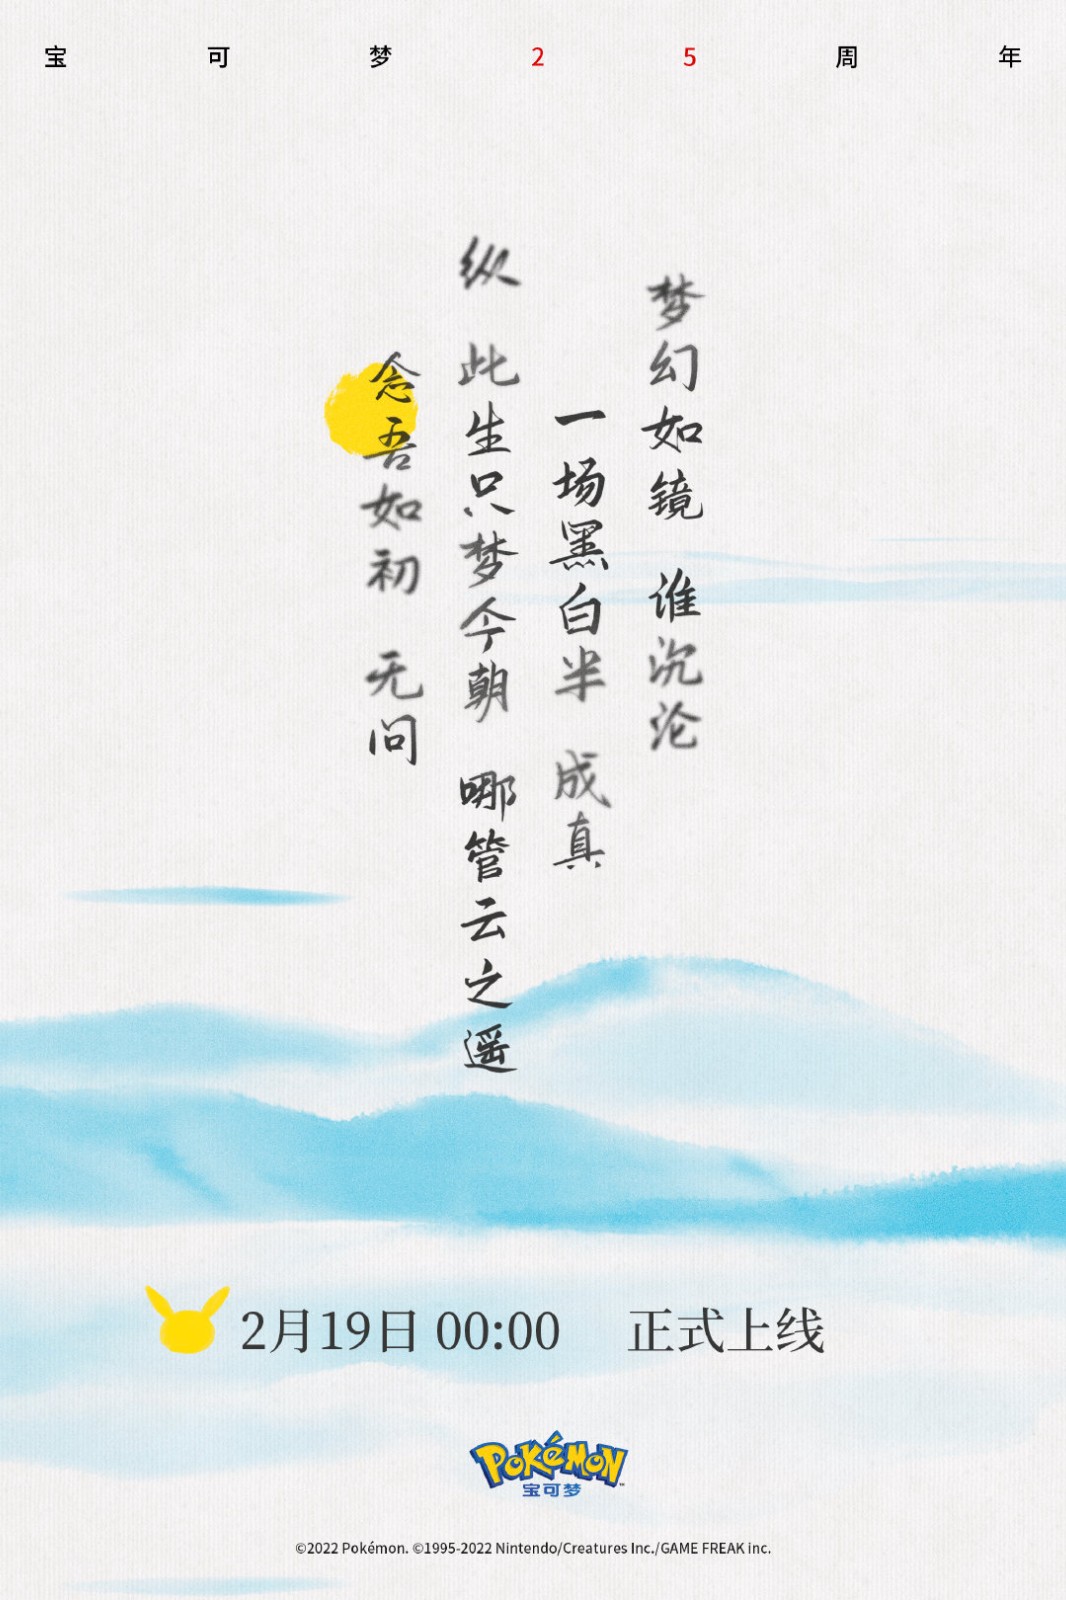 宝可梦25周年合作歌手周深 纪念曲目《可梦》1月19日凌晨上线